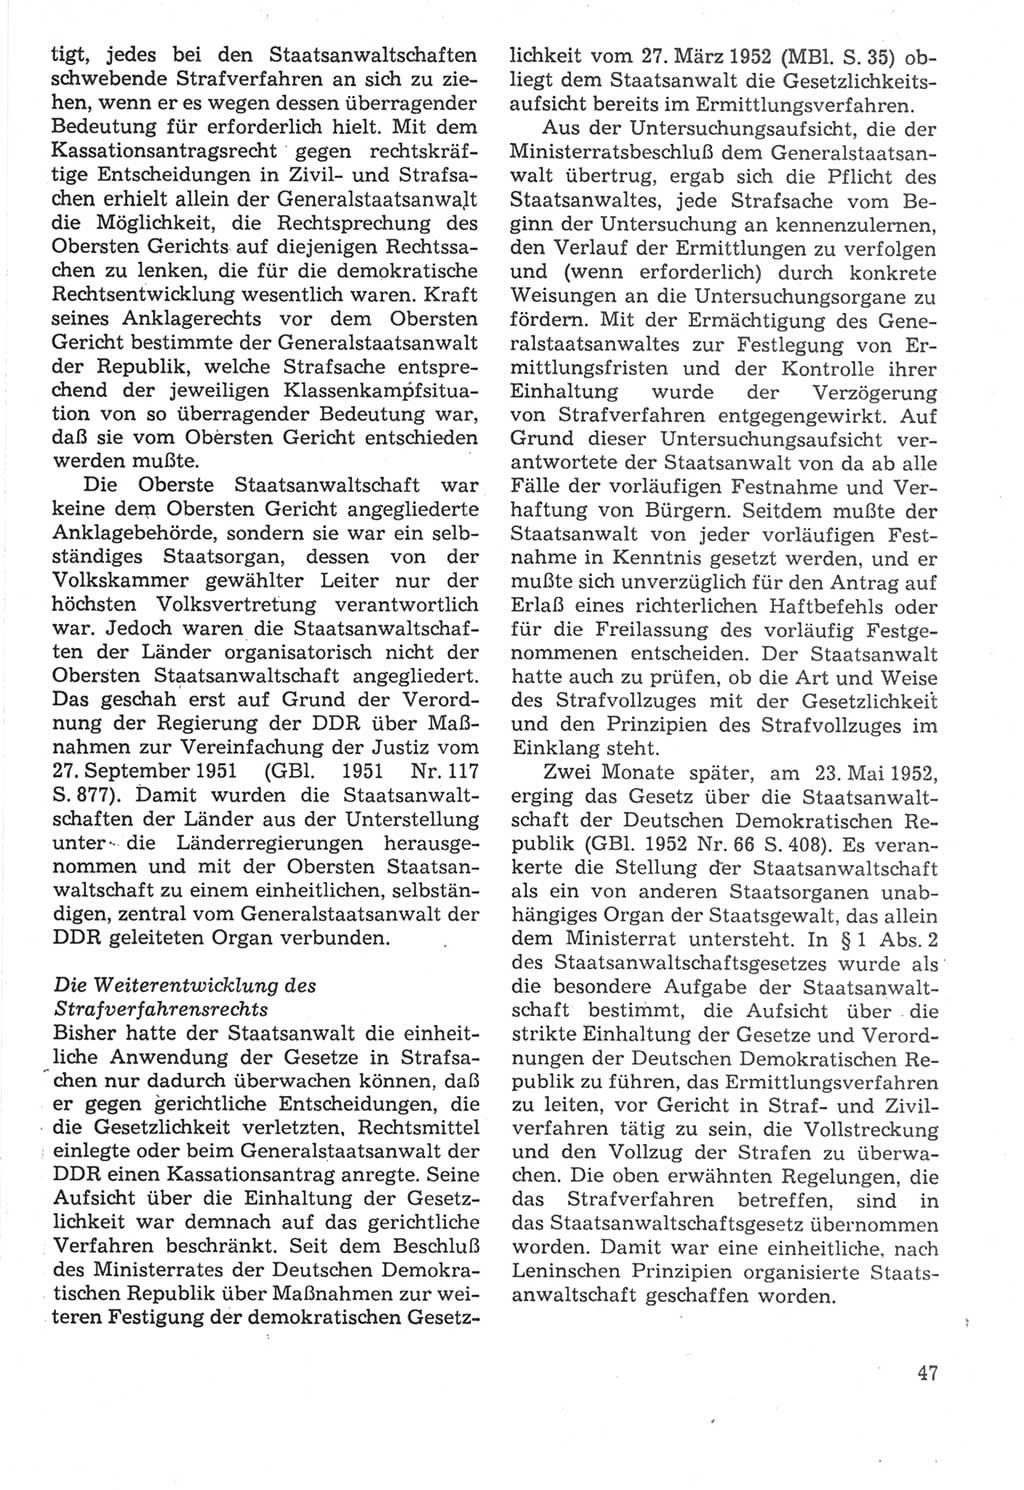 Strafverfahrensrecht [Deutsche Demokratische Republik (DDR)], Lehrbuch 1987, Seite 47 (Strafverf.-R. DDR Lb. 1987, S. 47)